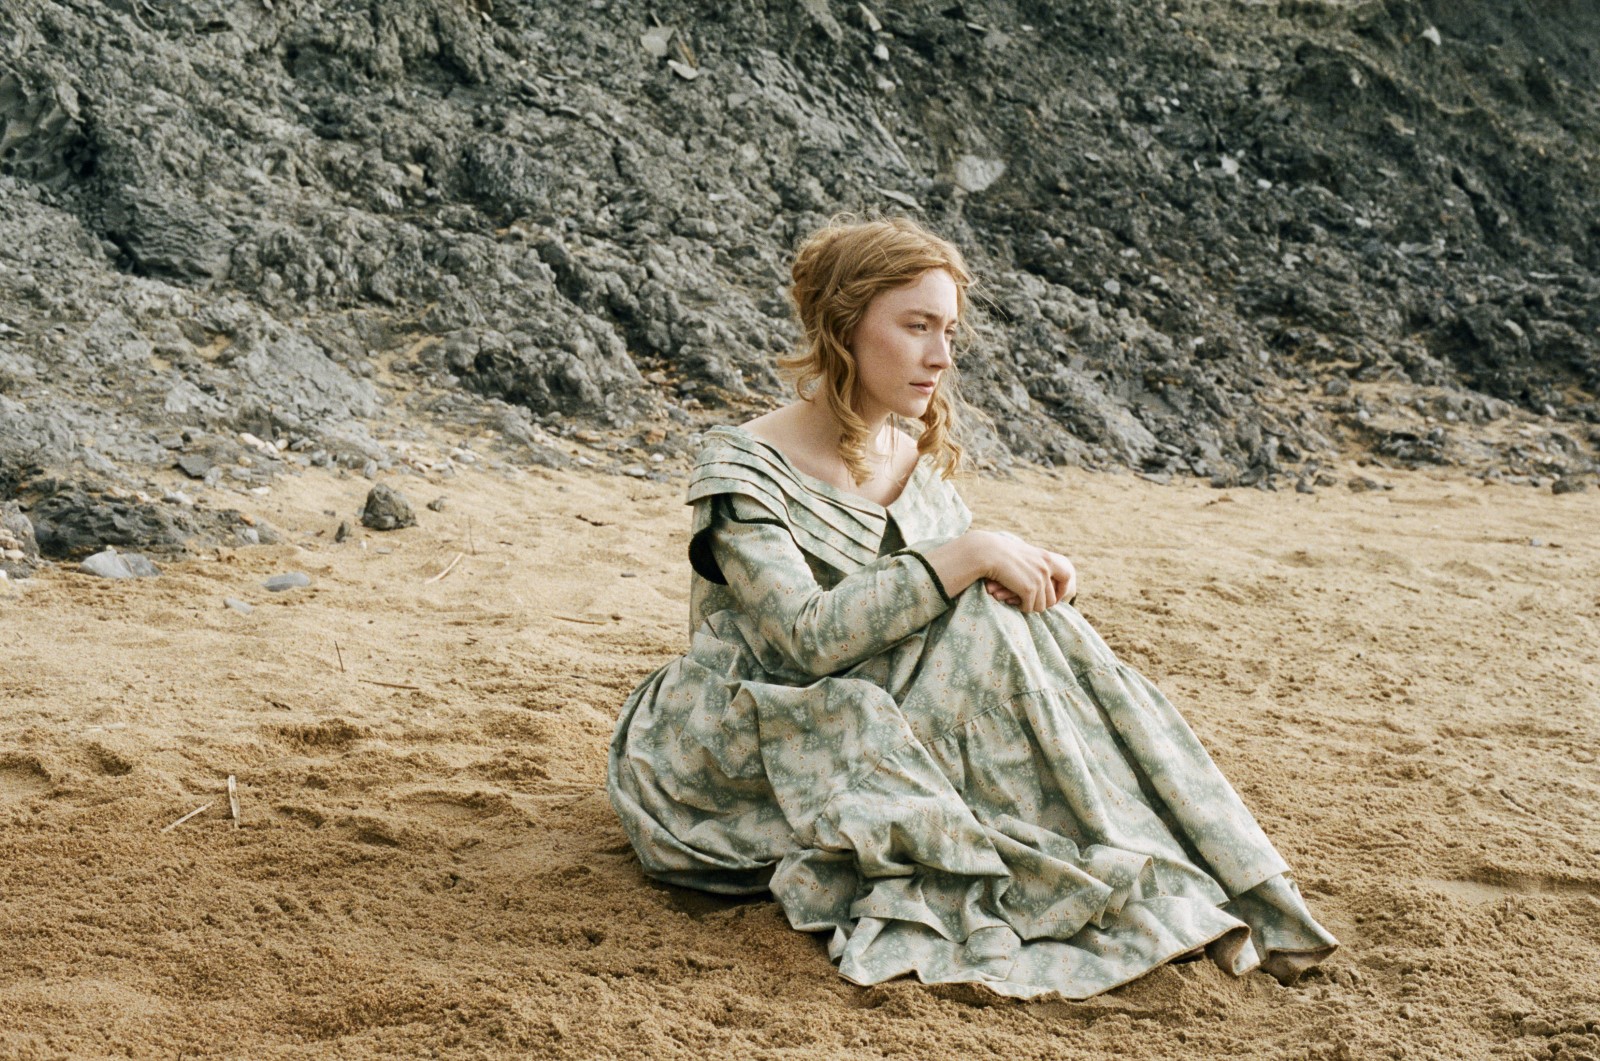 Saoirse está sentada sozinha na areia da praia. Ela tem os cabelos louros presos e usa um vestido com detalhes em verde. Atrás dela vemos uma grande rocha